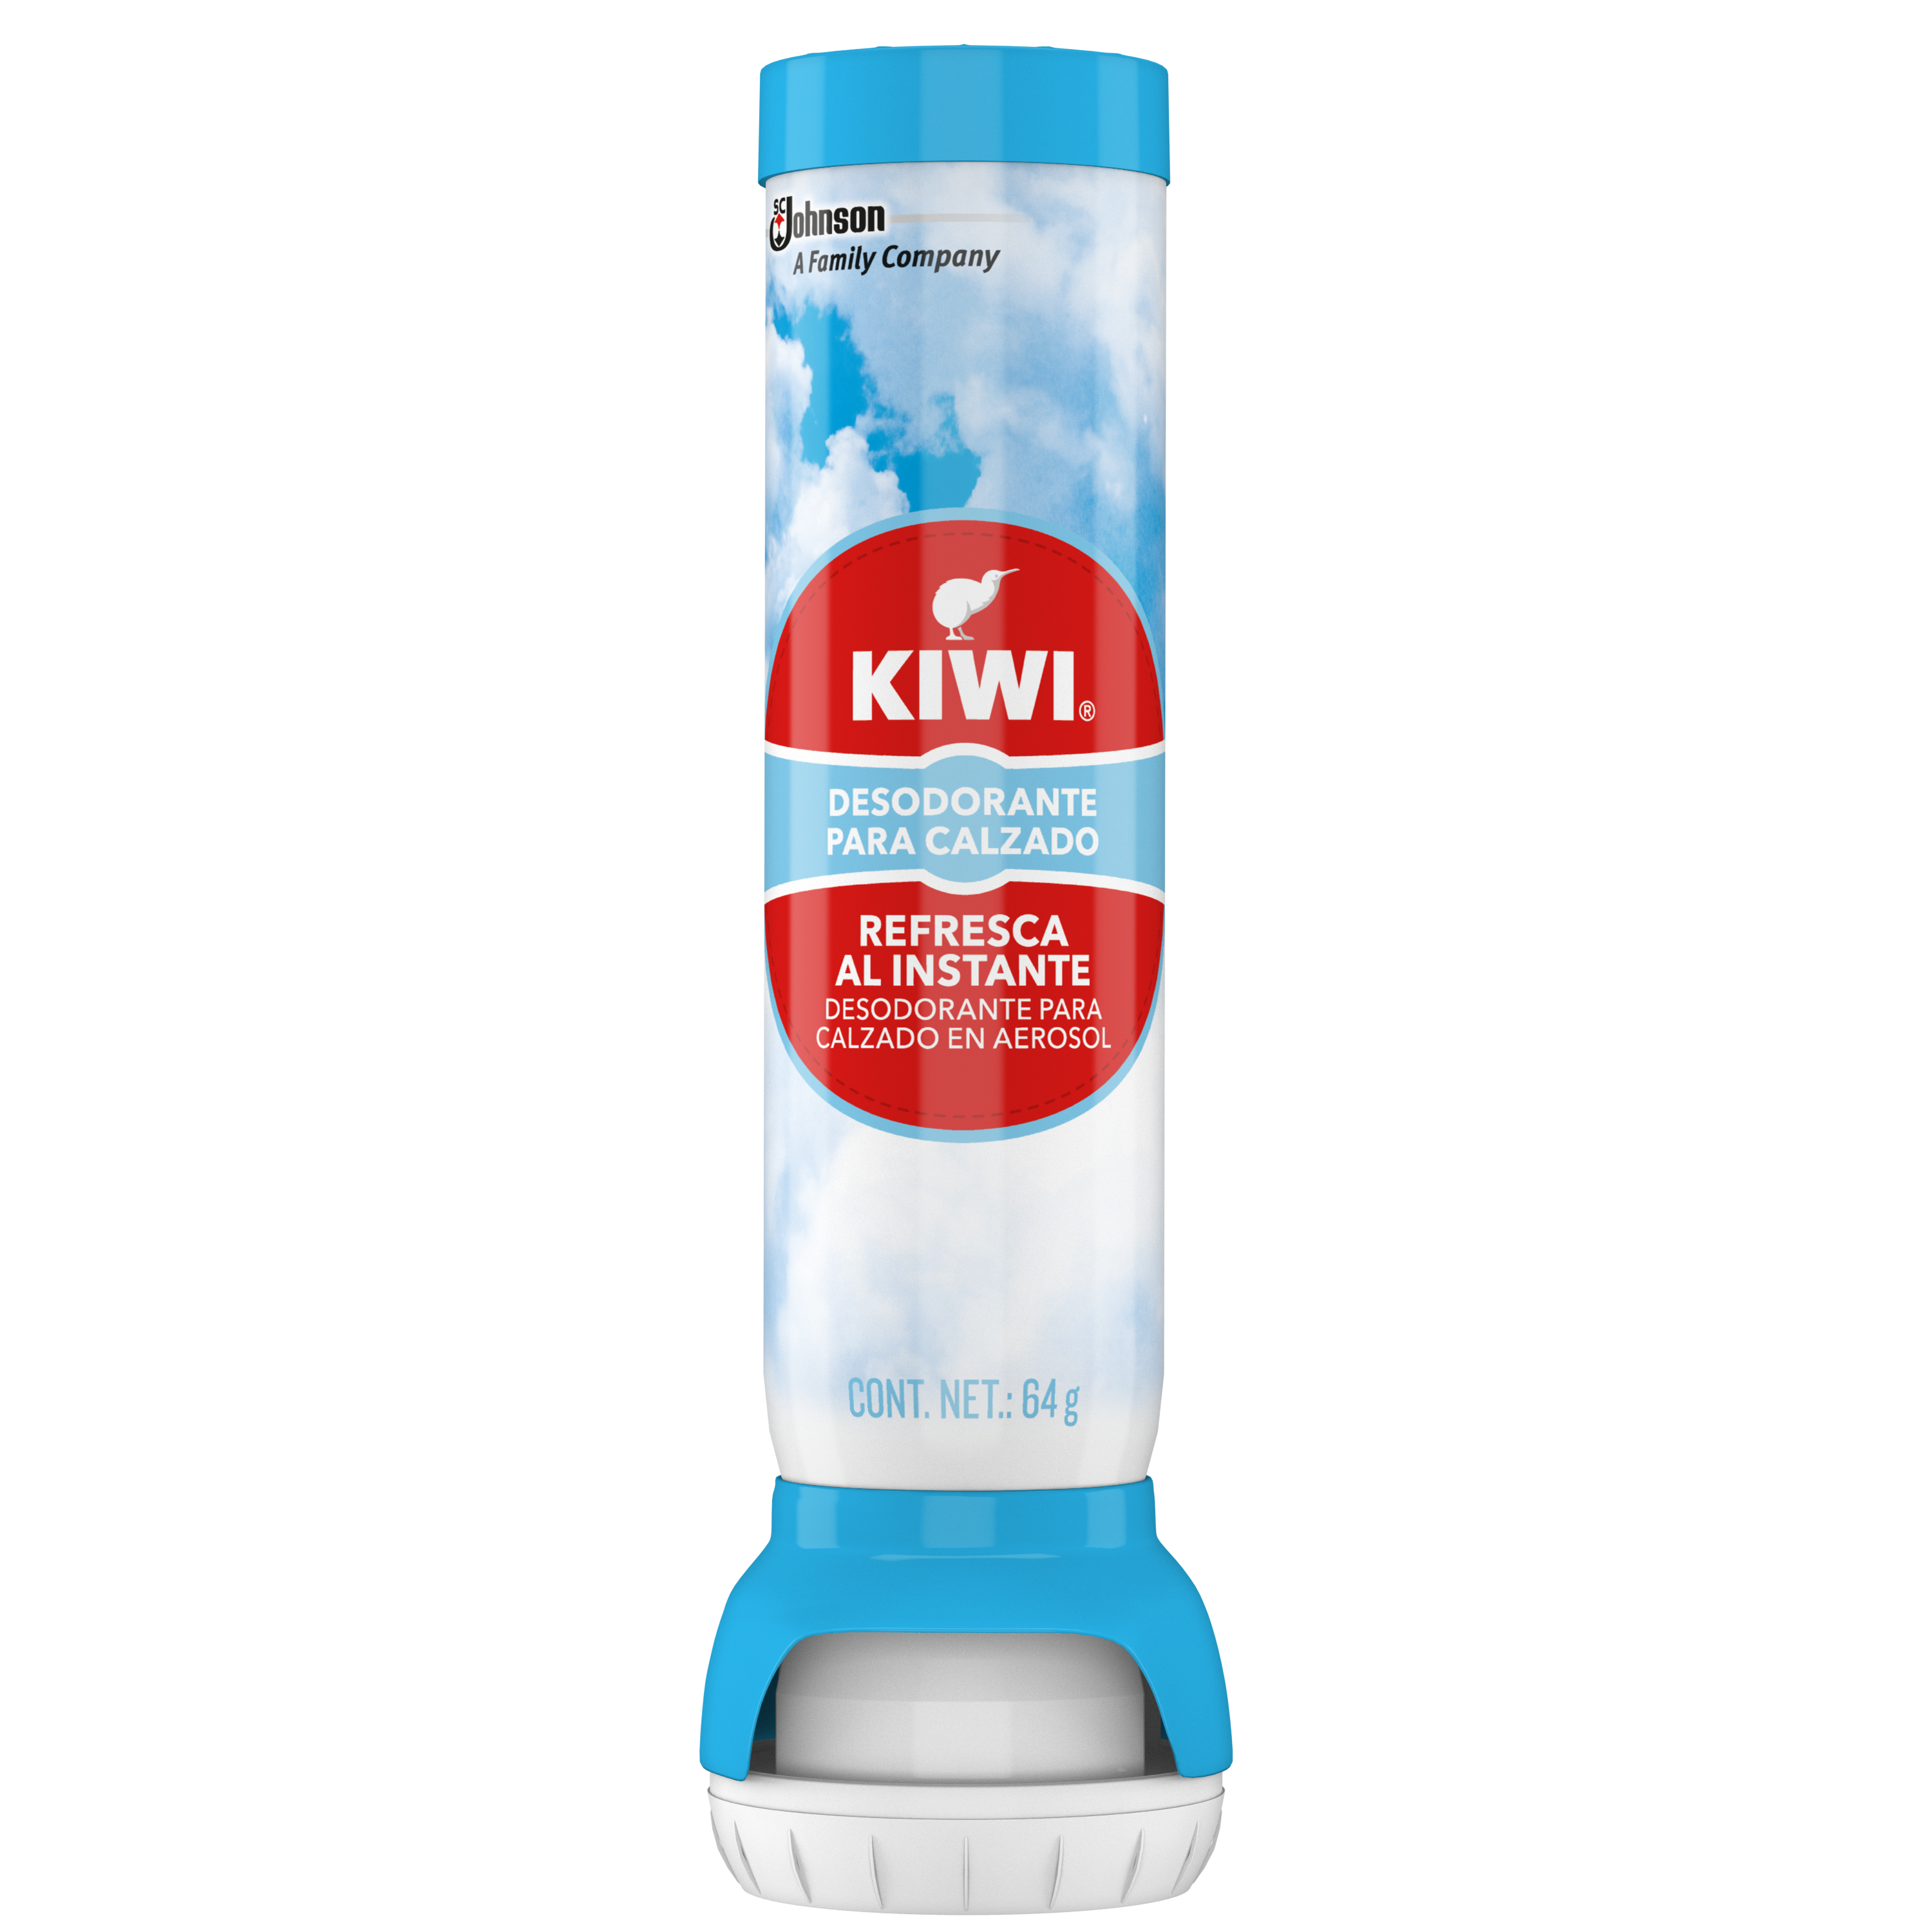 KIWI® Desodorante para zapatos